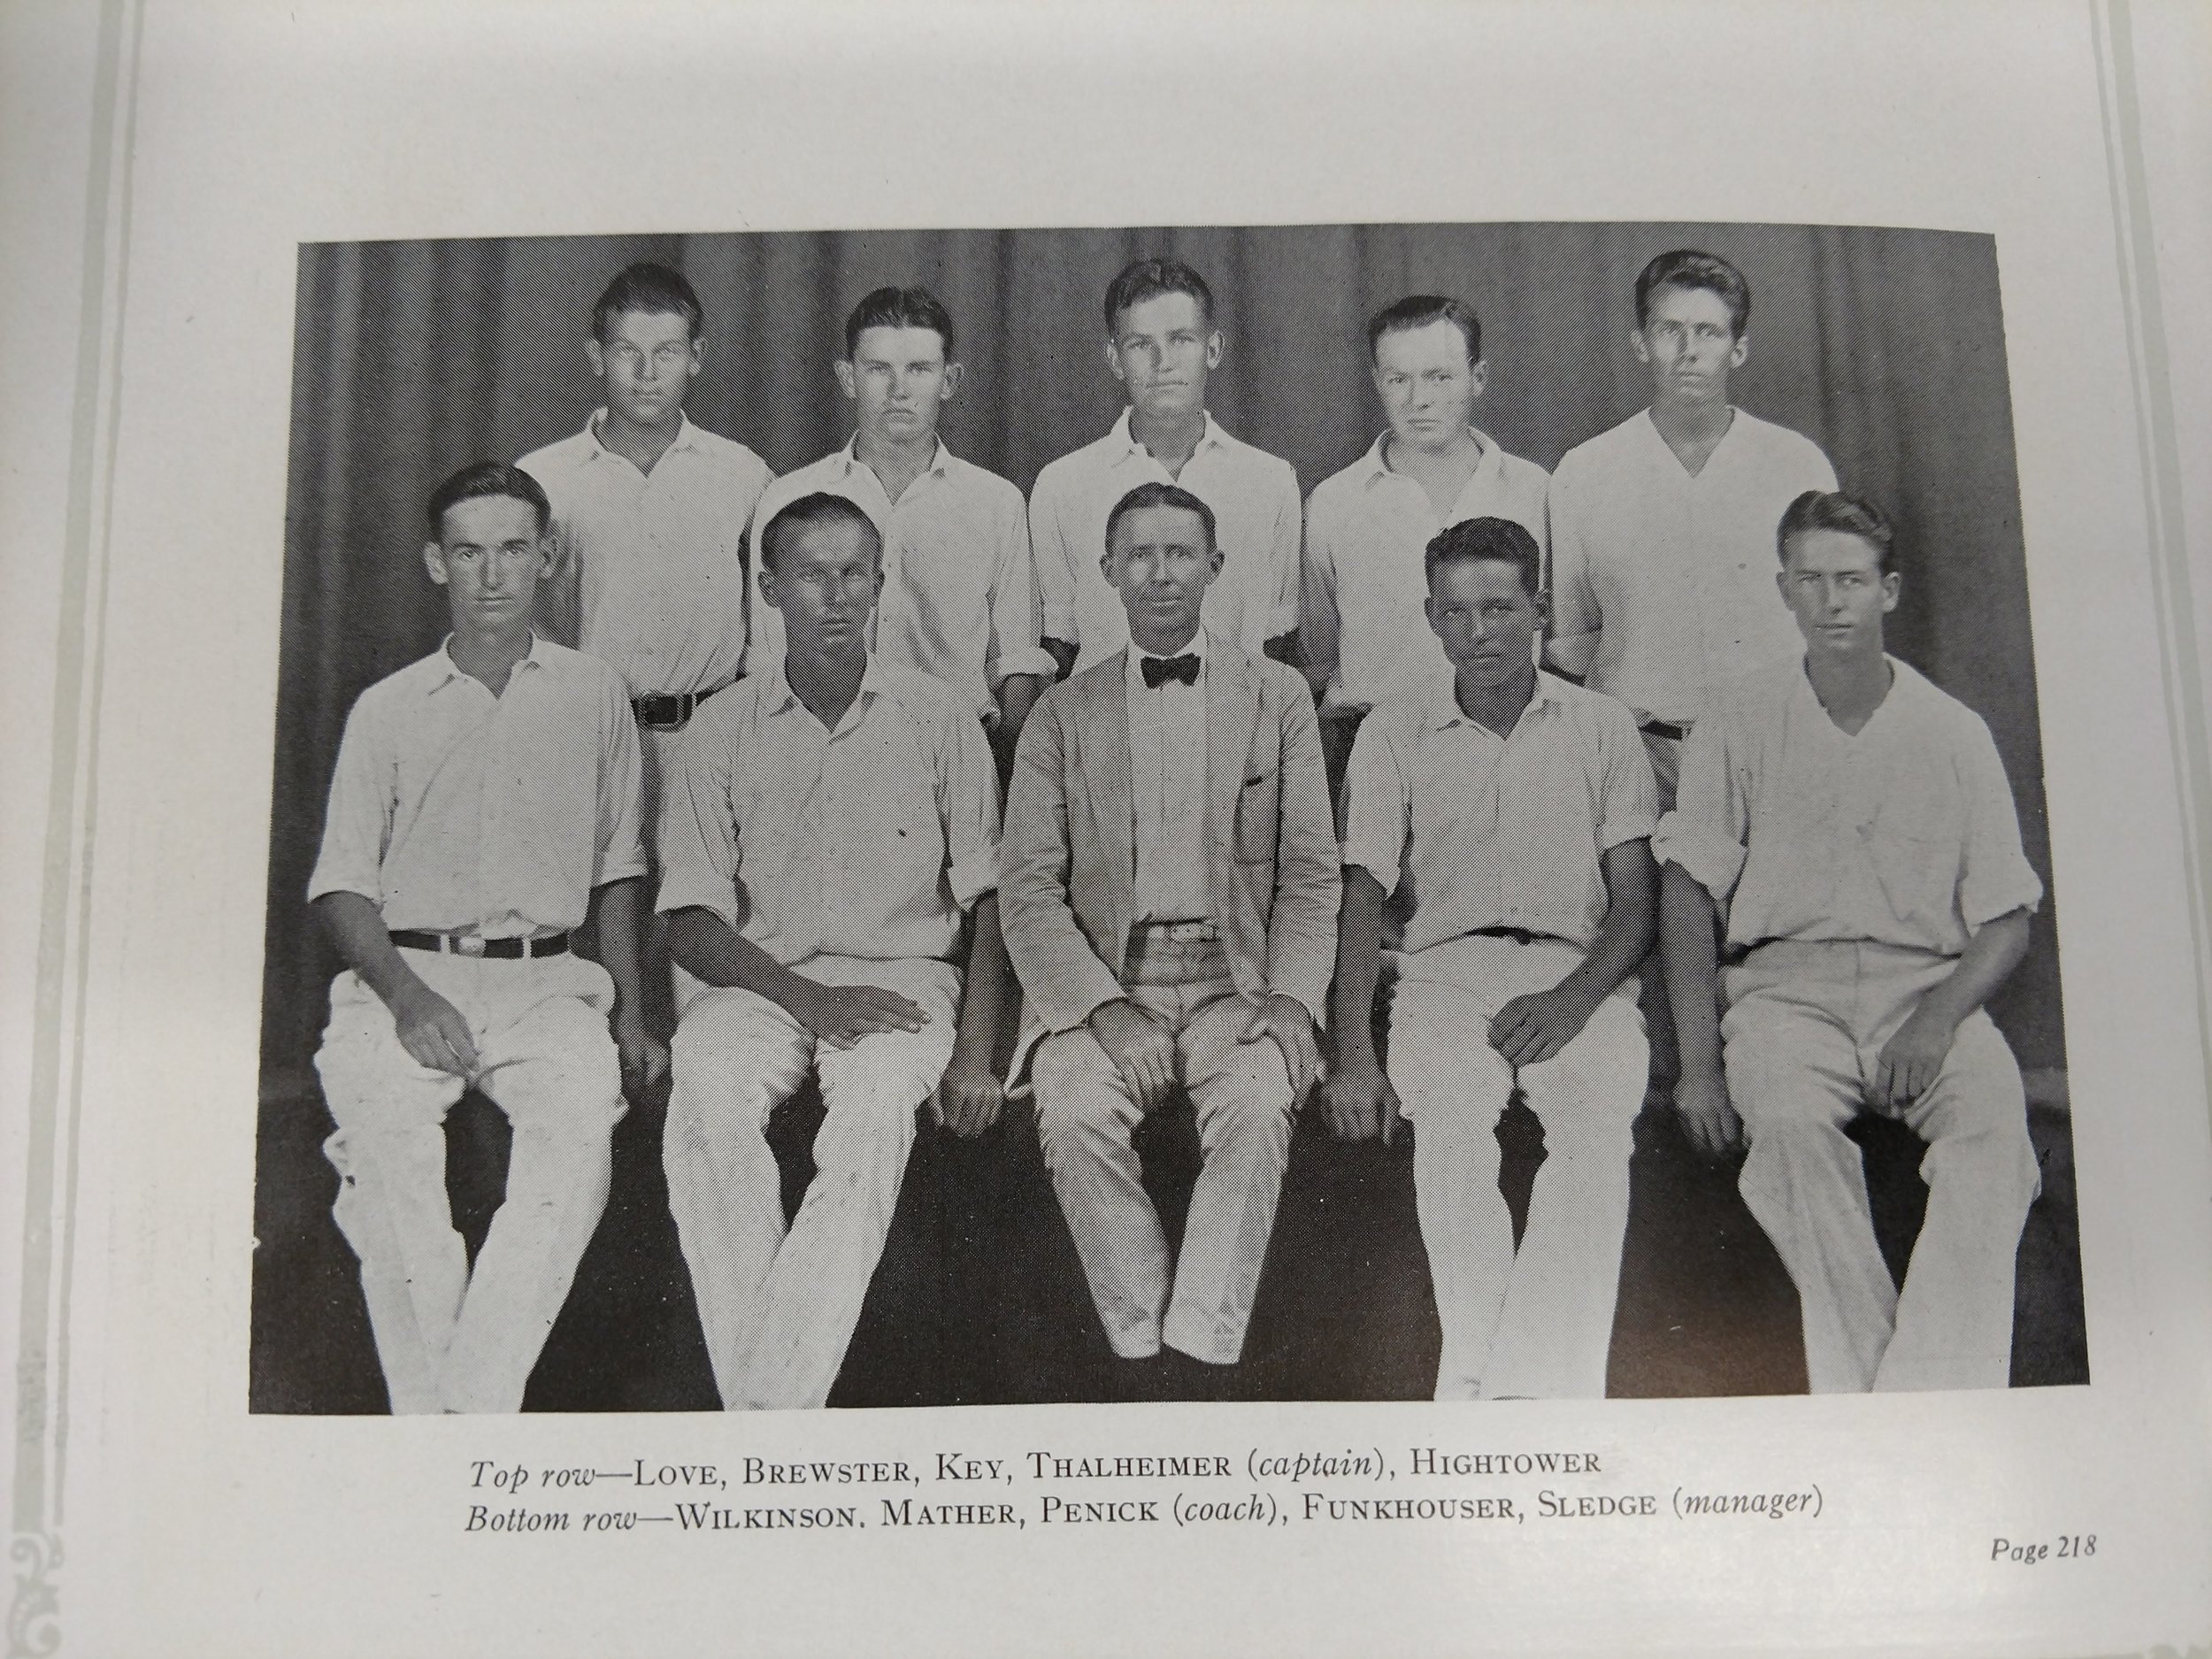  1926 tennis team